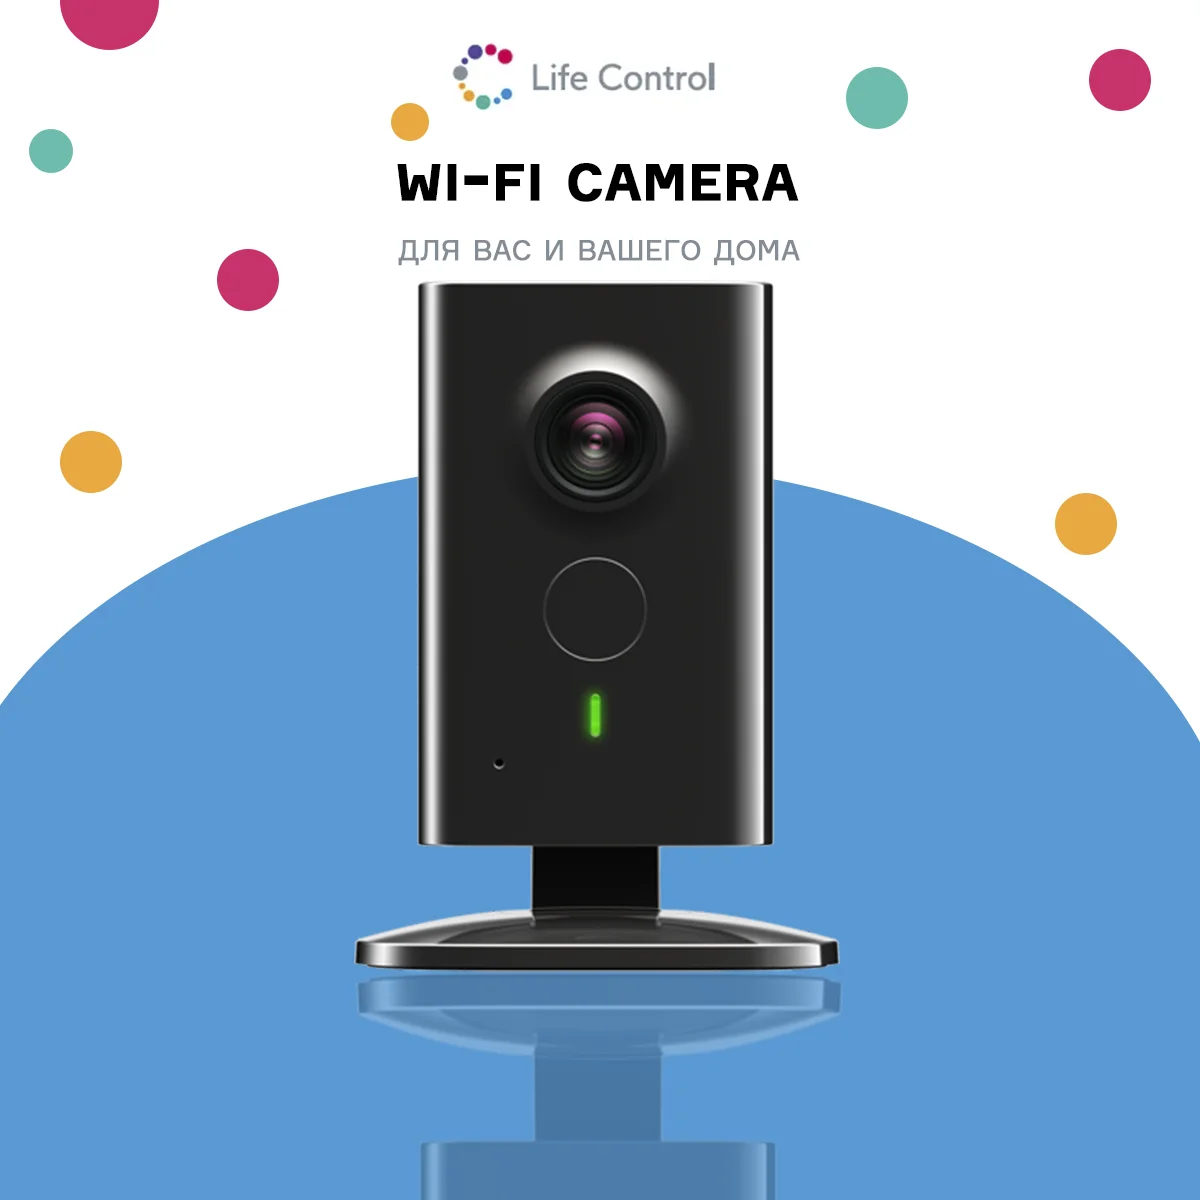 Фото Wi-Fi камера LifeControl (аналог Nobelic NBQ-1110F) Ivideon + 16GB Flash | Безопасность и защита